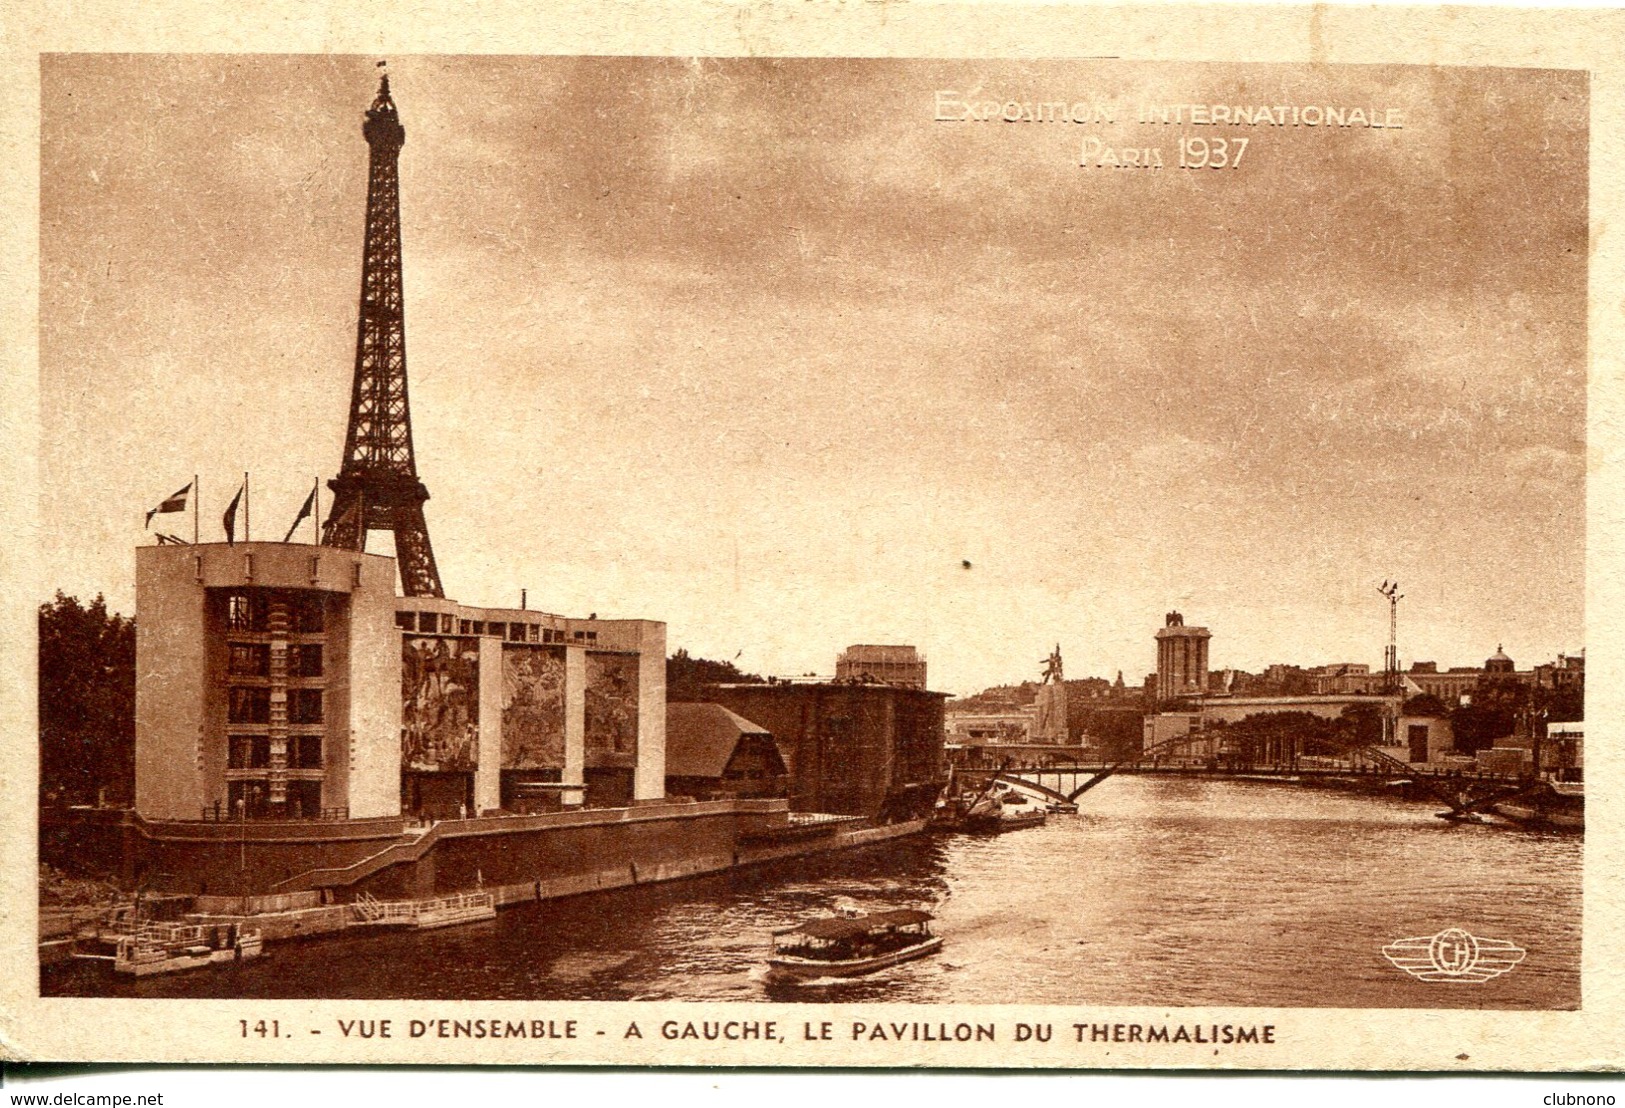 CPA - PARIS - EXPO INT. 1937 - VUE D'ENSEMBLE - PAVILLON DU THERMALISME - Expositions